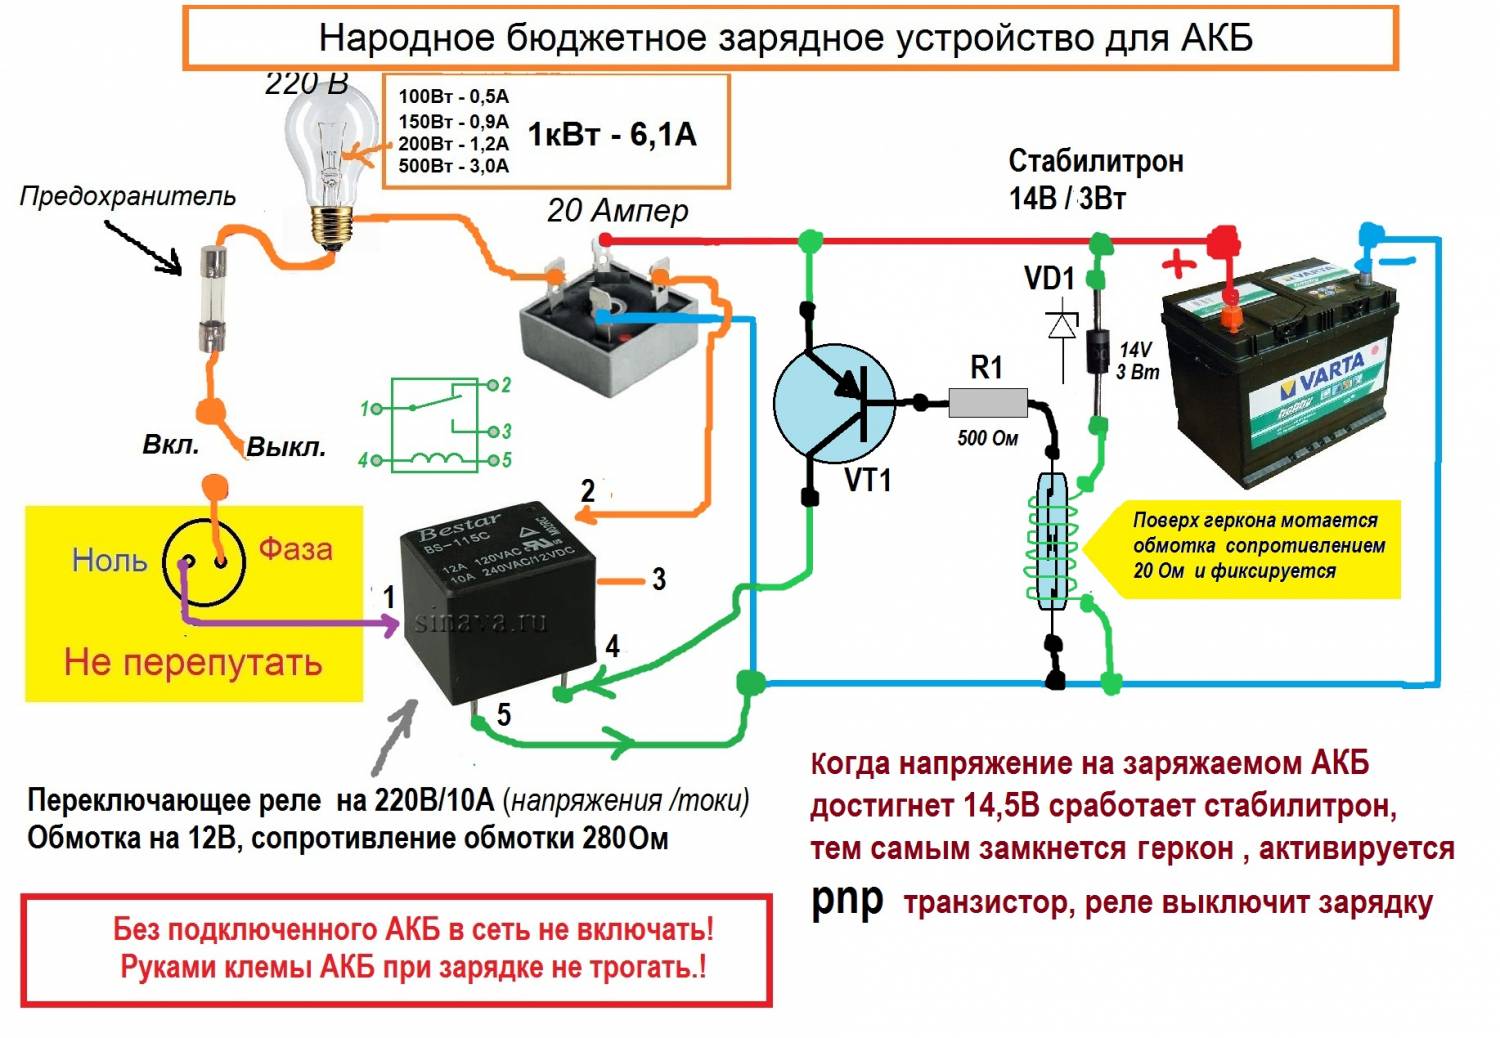 Как восстановить аккумулятор телефона в домашних условиях тарифкин.ру
как восстановить аккумулятор телефона в домашних условиях